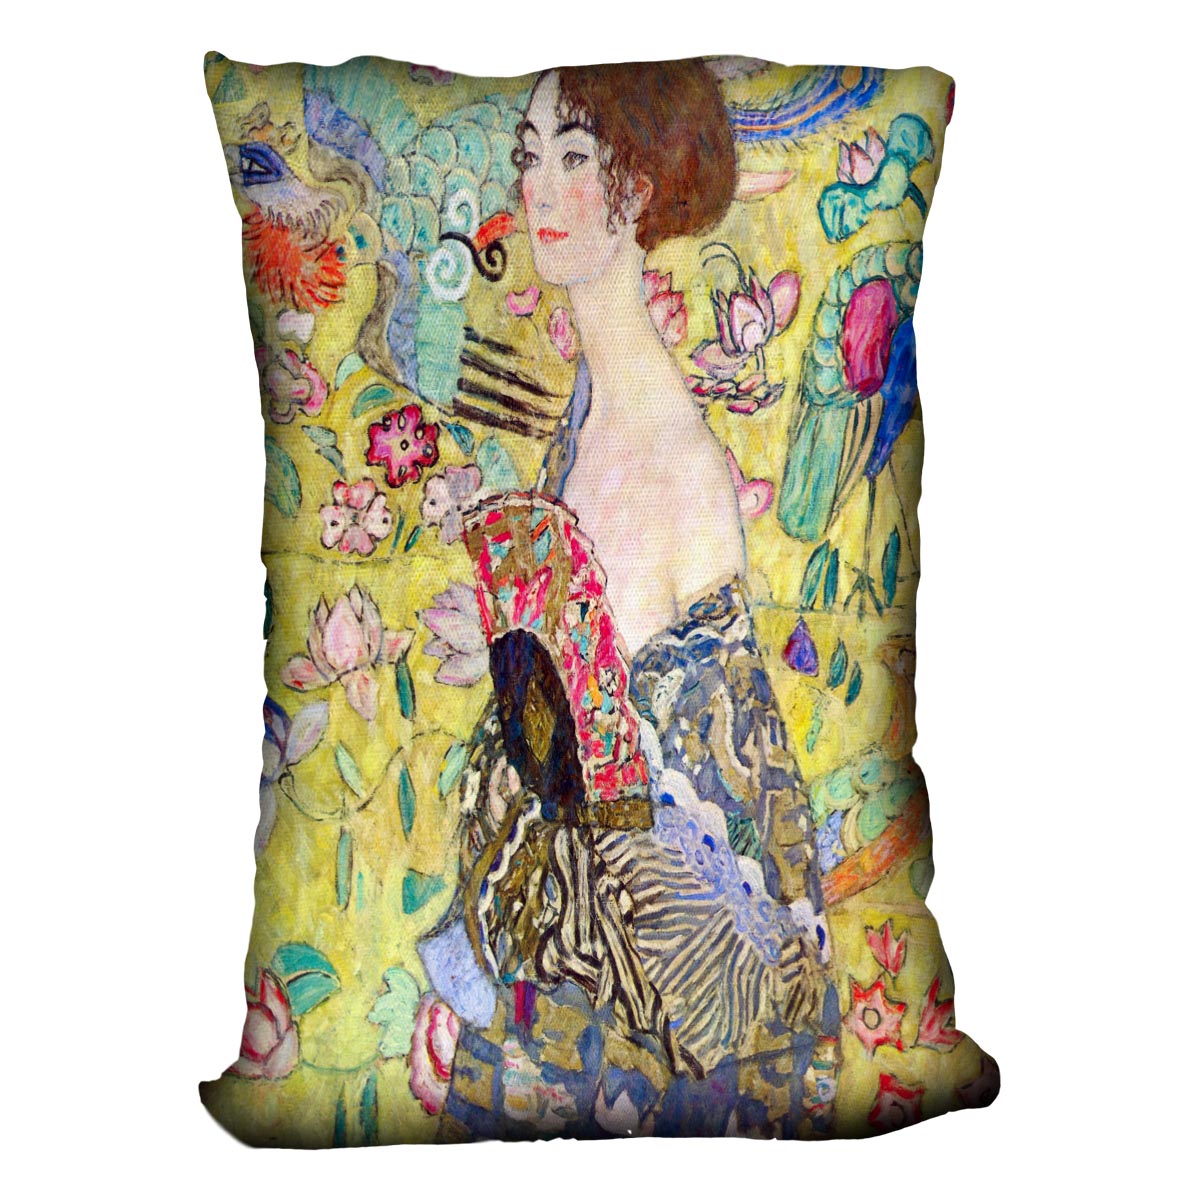 Lady with fan by Klimt Cushion